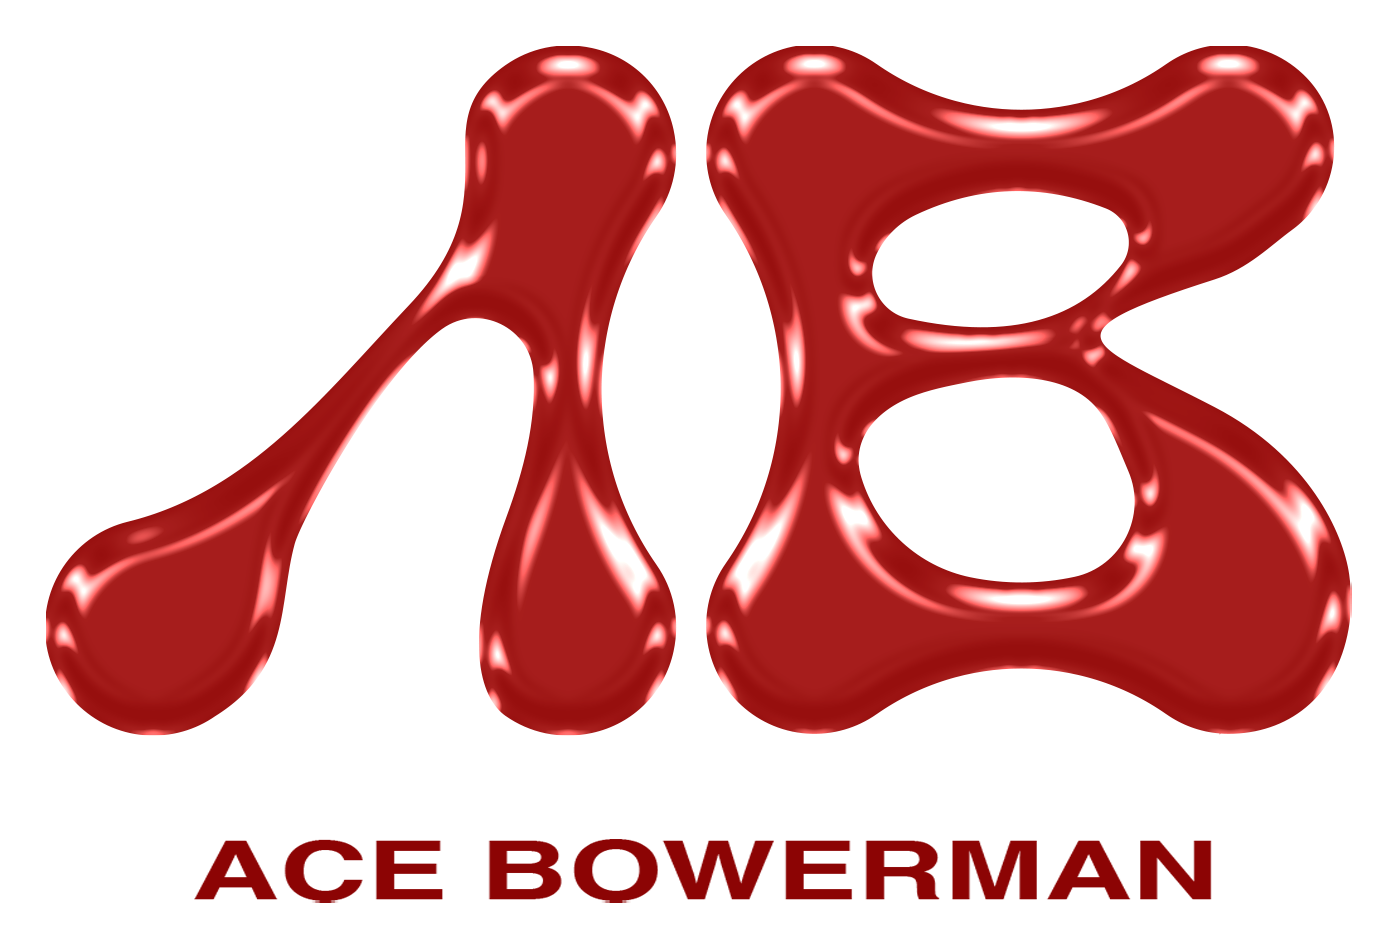 ACE BOWERMAN